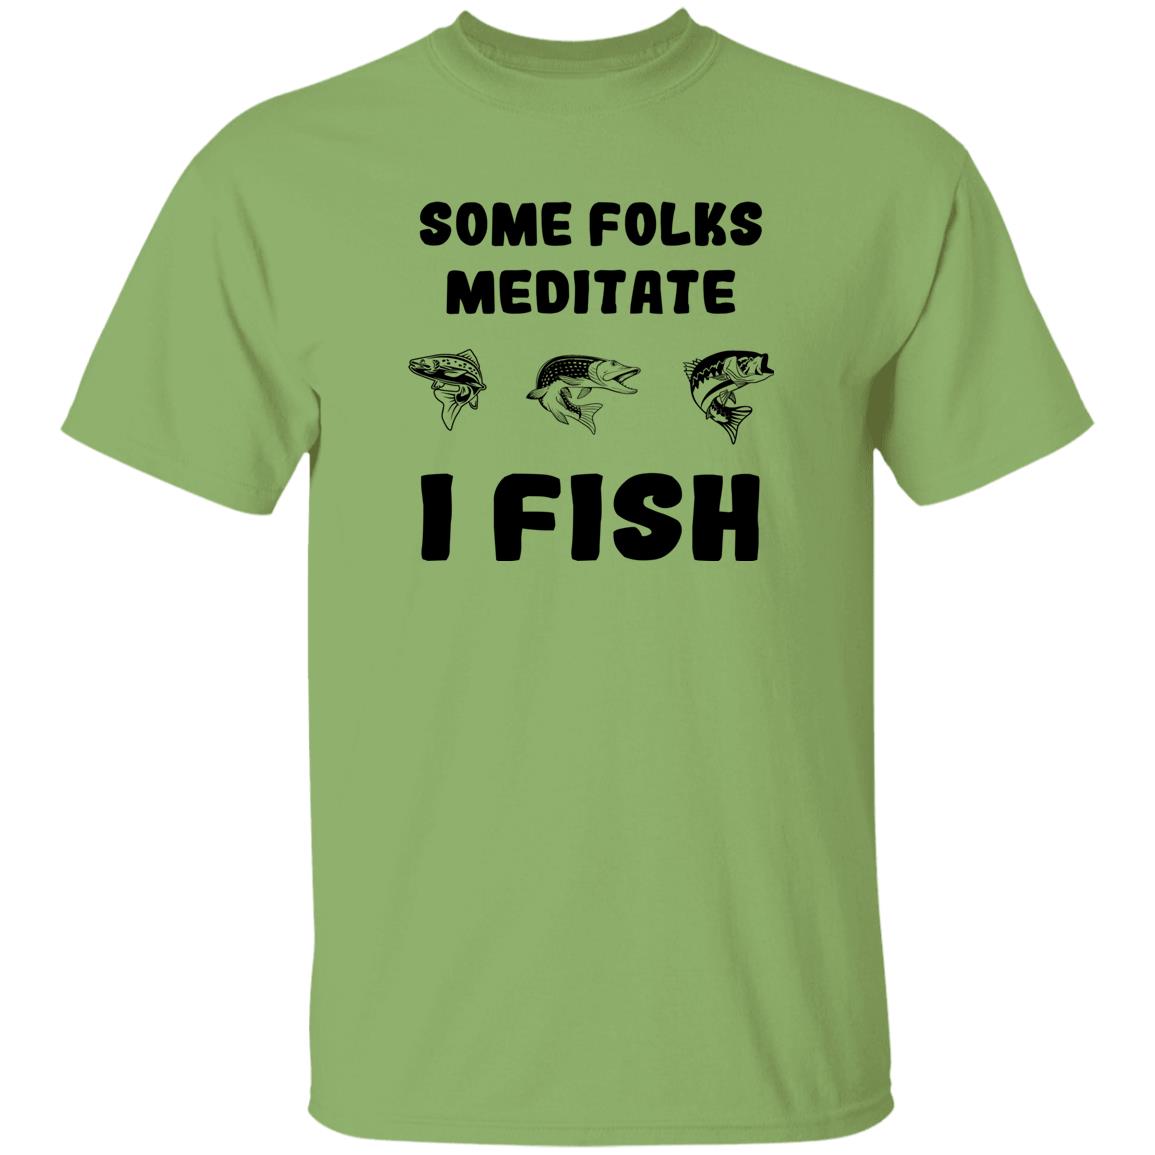 Some folks meditate I fish t-shirt kiwi